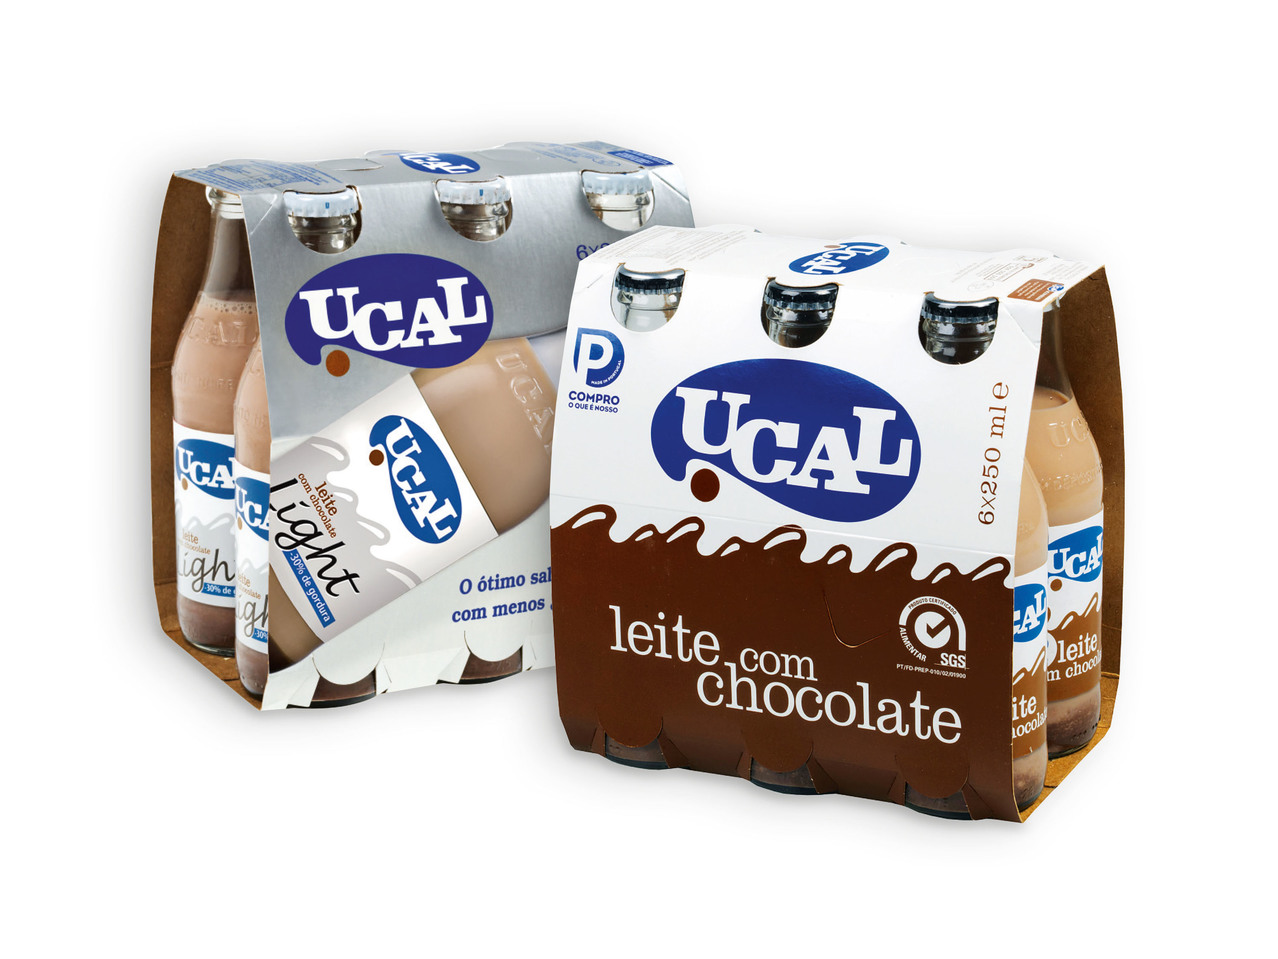 UCAL(R) Leite com Chocolate / Light